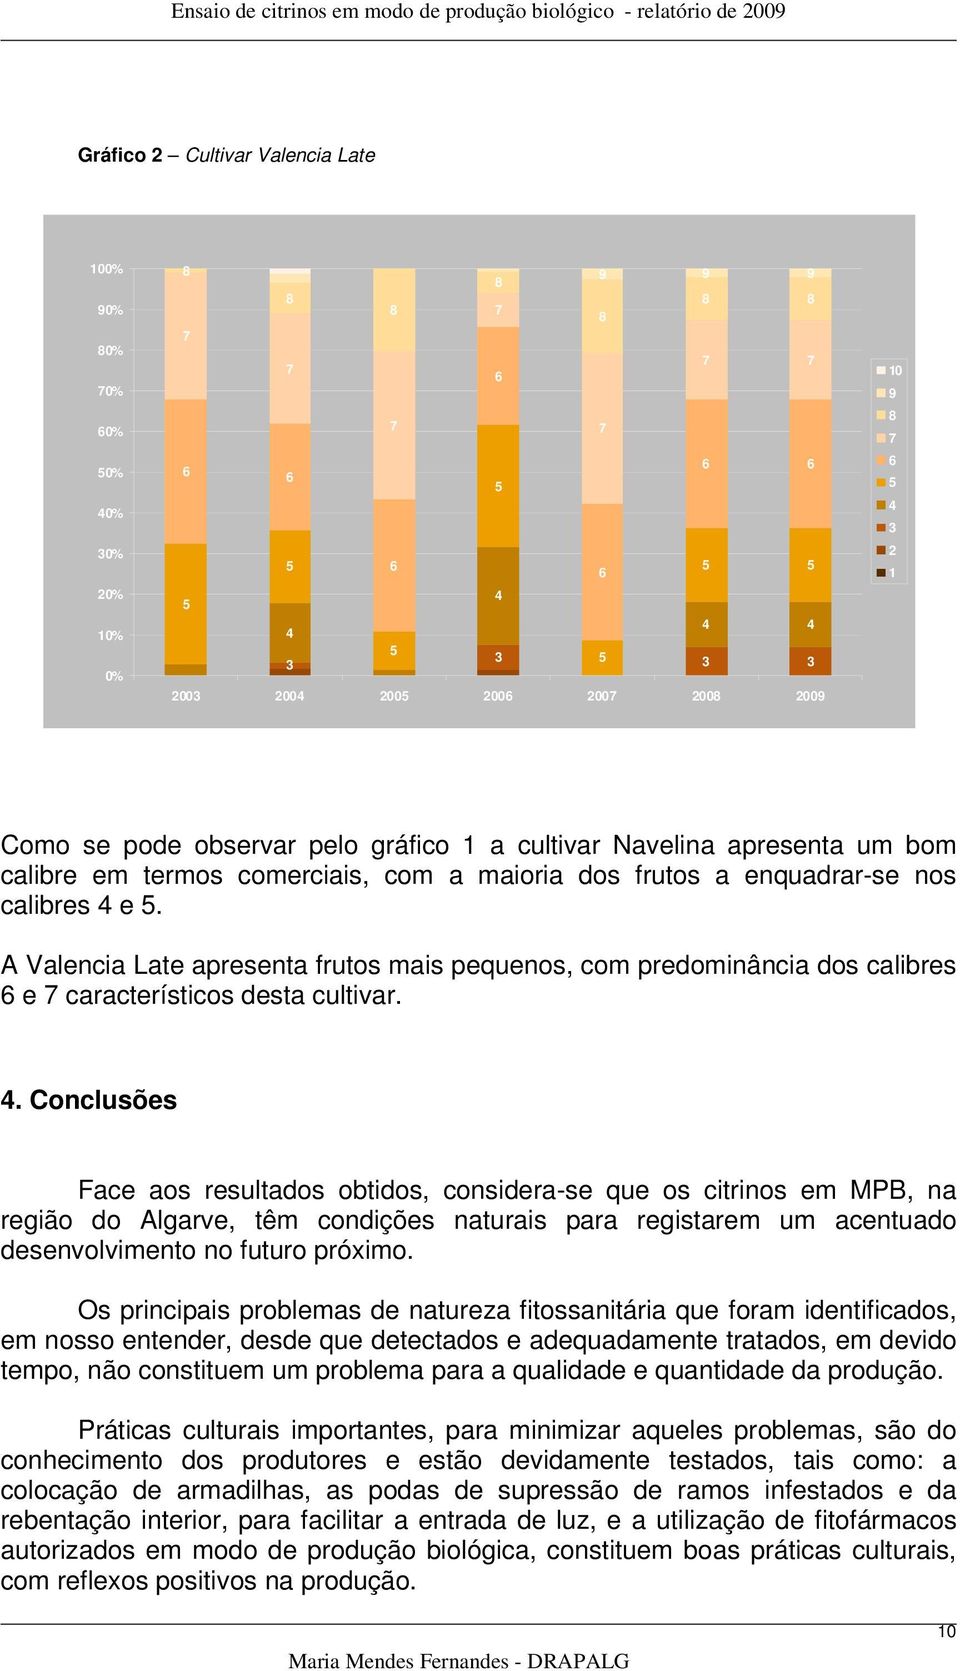 . Conclusões Face aos resultados obtidos, considera-se que os citrinos em MPB, na região do Algarve, têm condições naturais para registarem um acentuado desenvolvimento no futuro próximo.